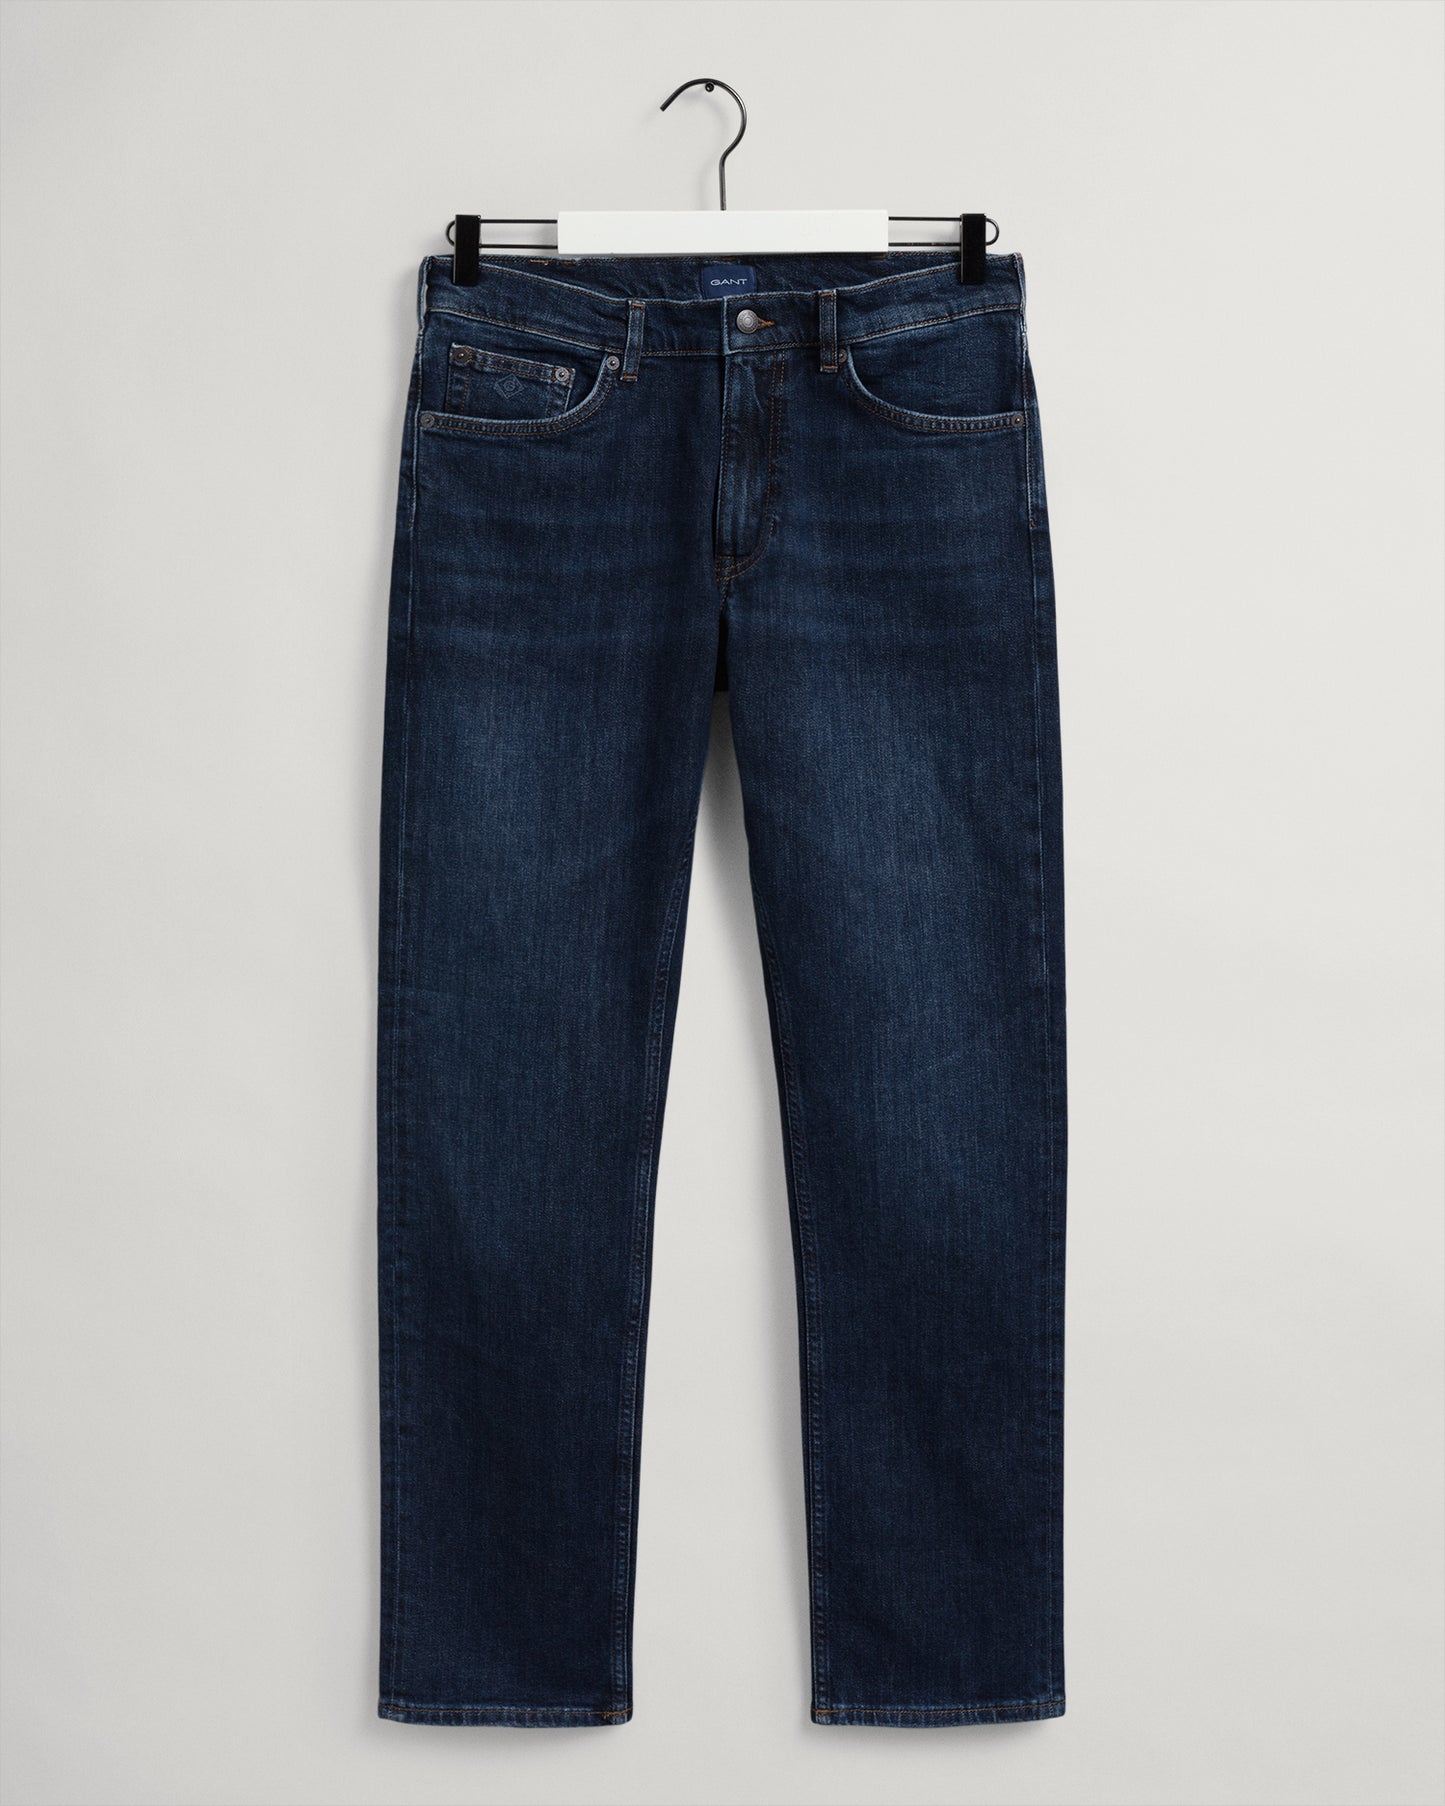 Gant Jeans In Regular Fit.   The Arley Gant Jeans.